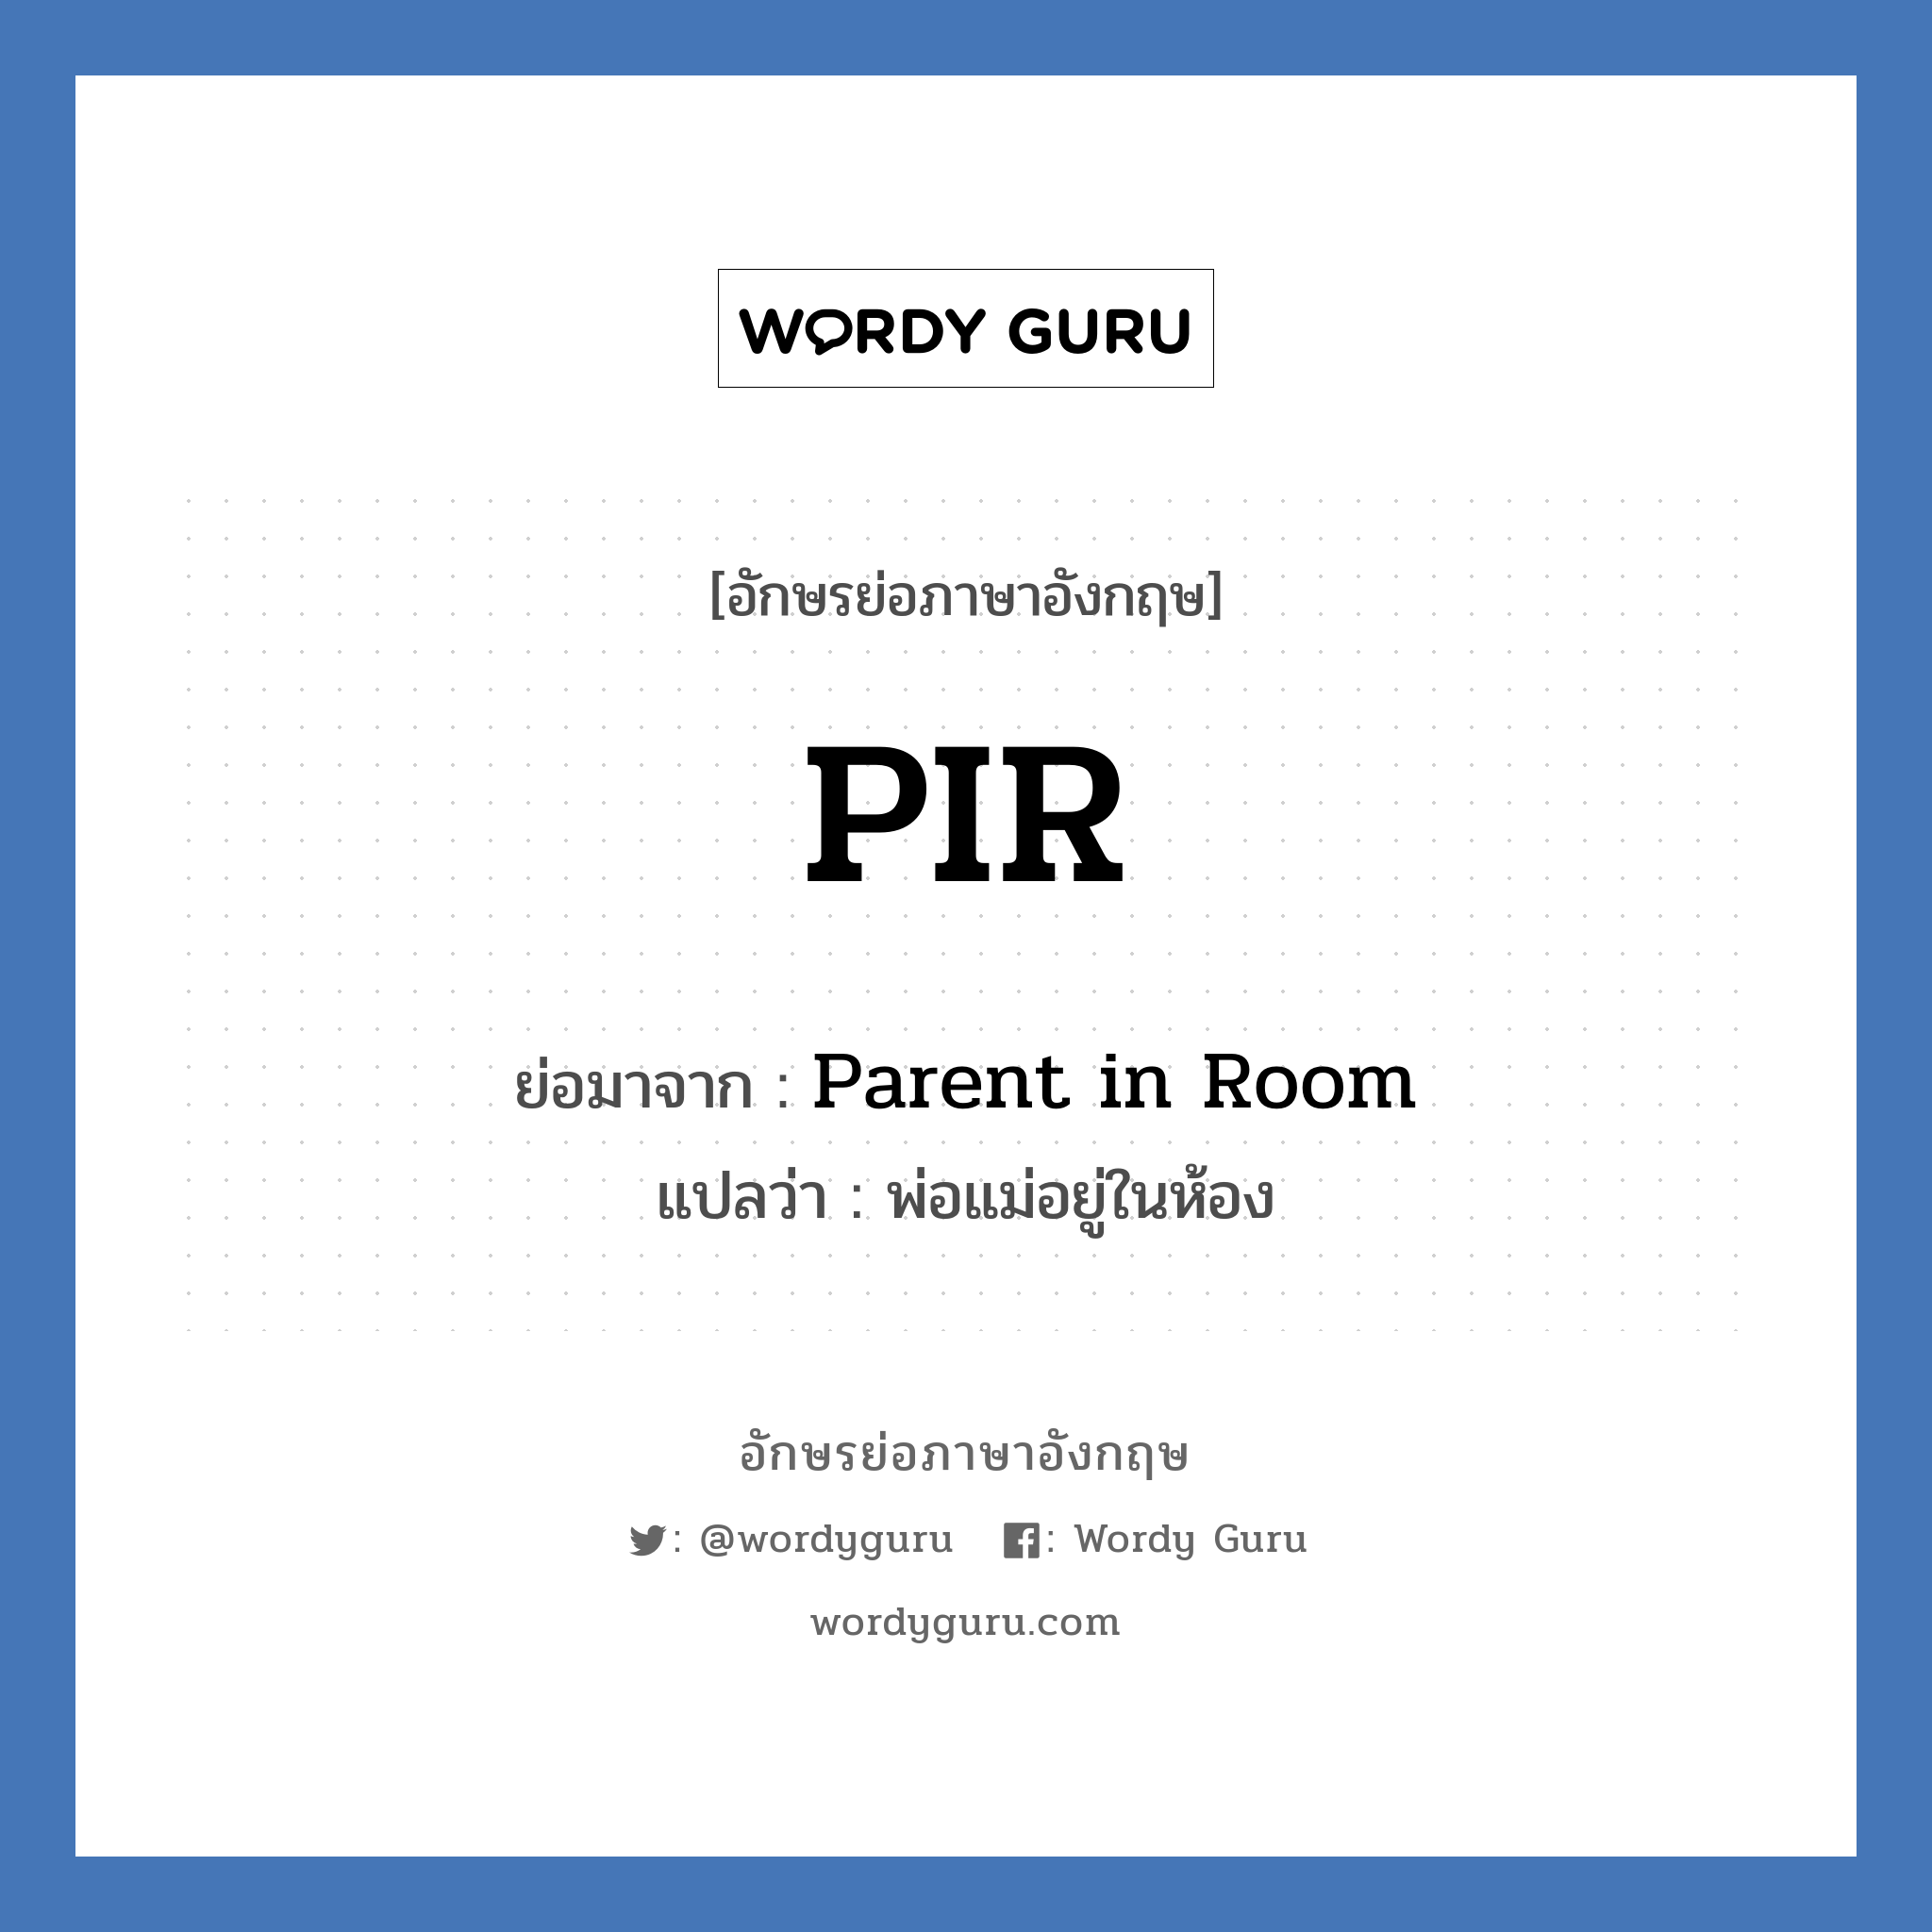 PIR ย่อมาจาก? แปลว่า?, อักษรย่อภาษาอังกฤษ PIR ย่อมาจาก Parent in Room แปลว่า พ่อแม่อยู่ในห้อง